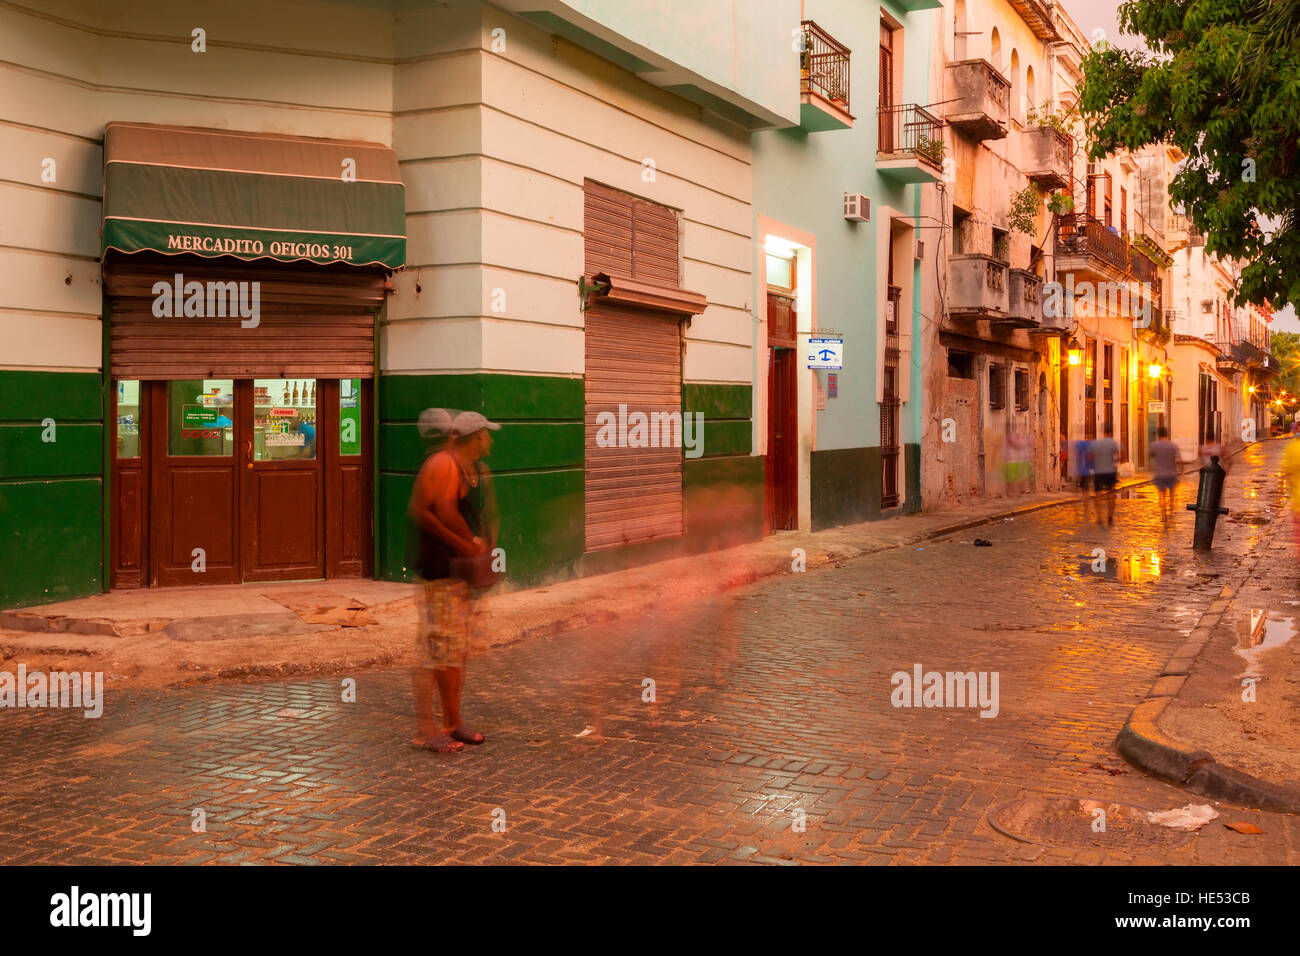 Una strada nella Vecchia Havana dopo la pioggia nei pressi di Plaza de San Francisco. Vecchia Havana, Cuba. Foto Stock